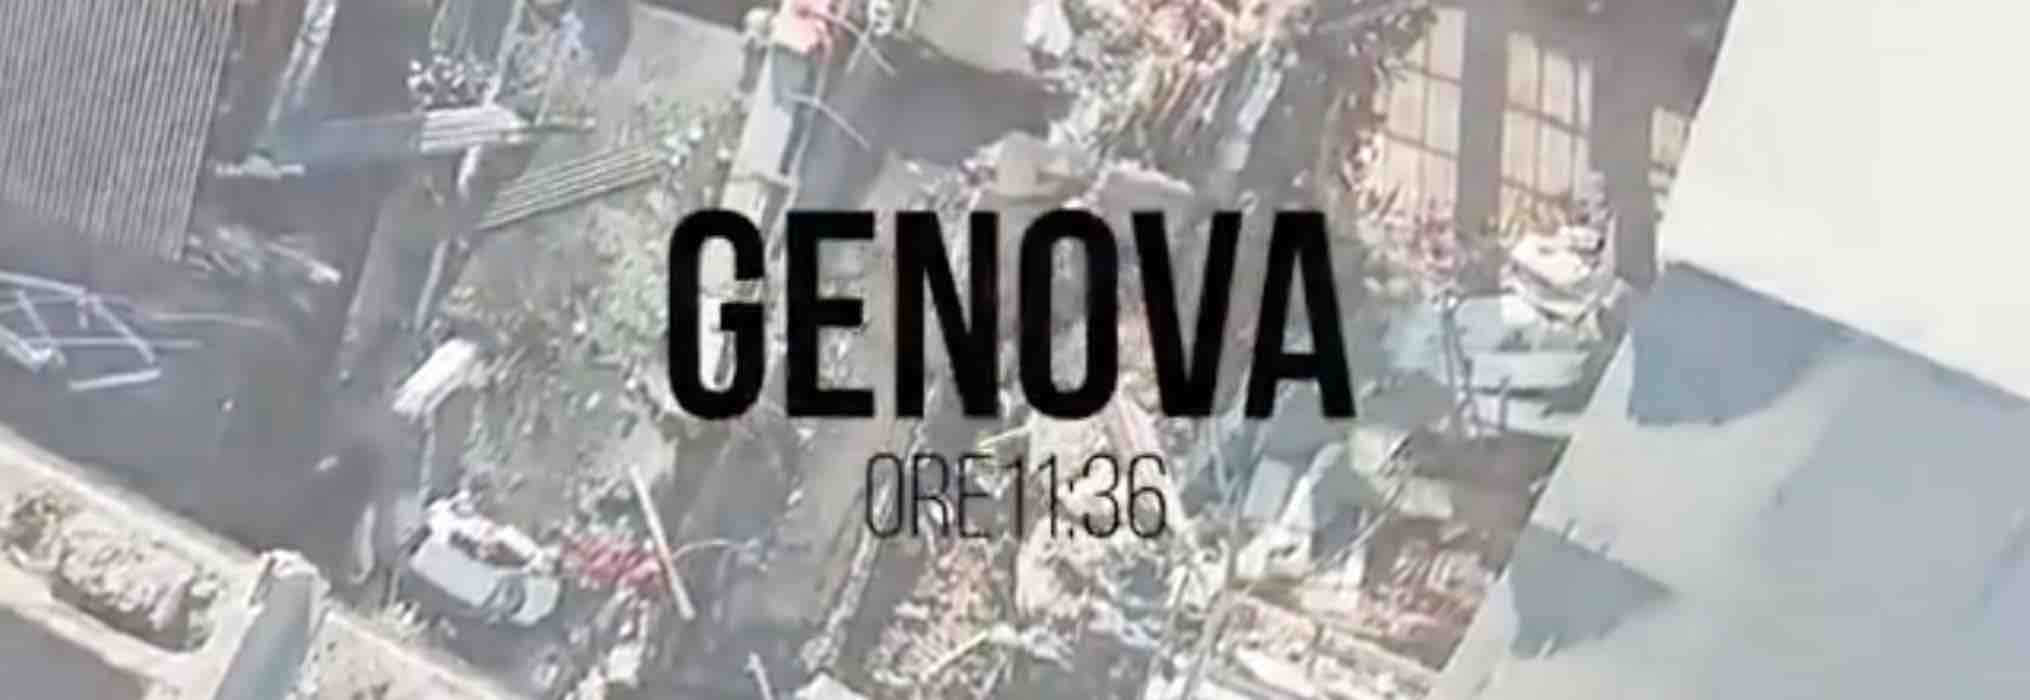 Rai 3, Genova ore 11:36 | il crollo del Ponte Morandi | anticipazioni sul film